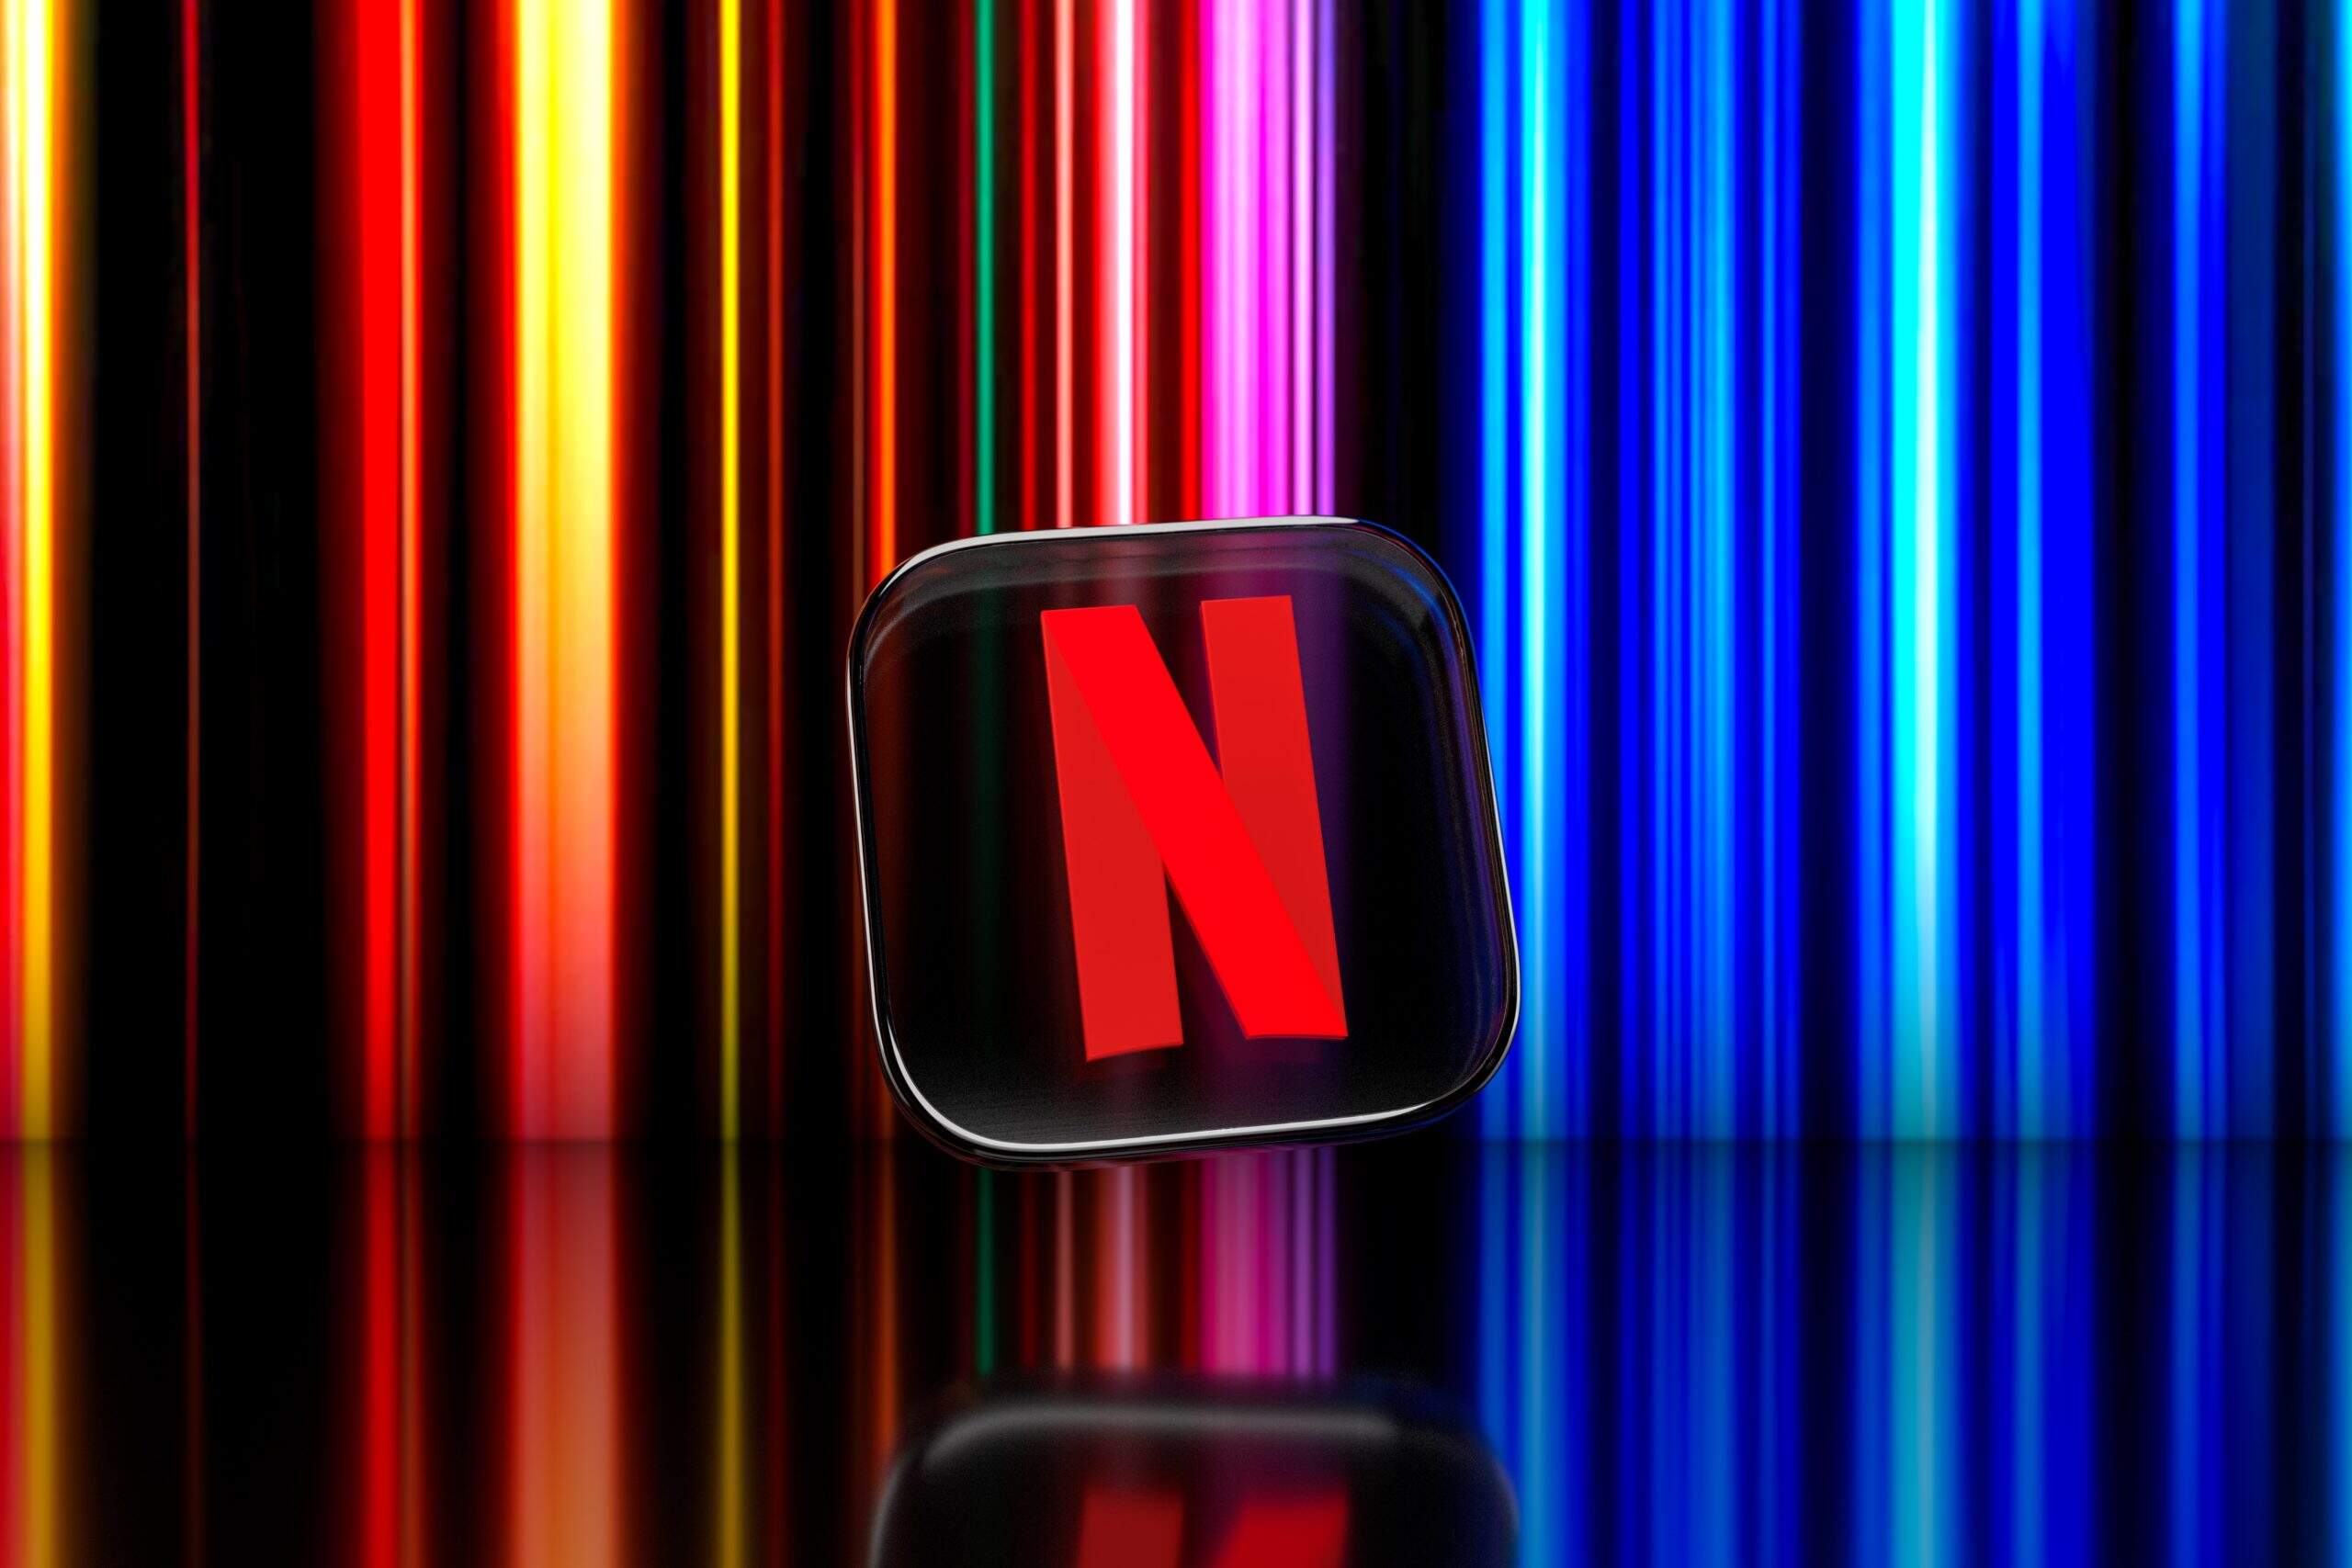  Logo da Netflix, exemplo de tecnologias disruptivas | Crédito: Dima Solomin